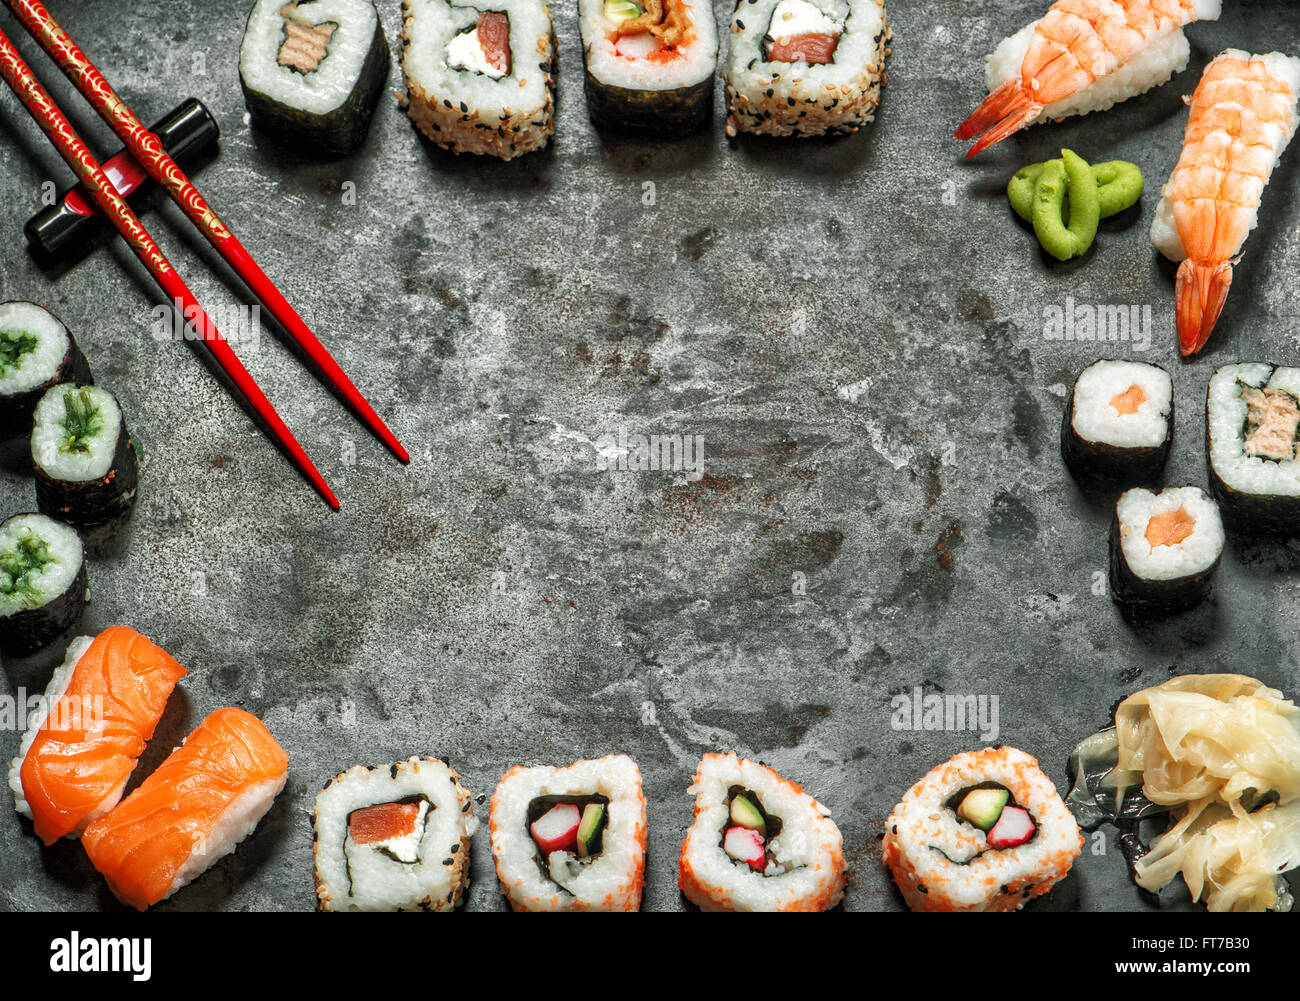 Sushi-Rollen, Maki, Nigiri, Lachs, Garnelen, Thunfisch, Tofu, Reis, Avocado, Wasabi, eingelegtem Ingwer. Traditionelles japanisches Essen staatlich Stockfoto